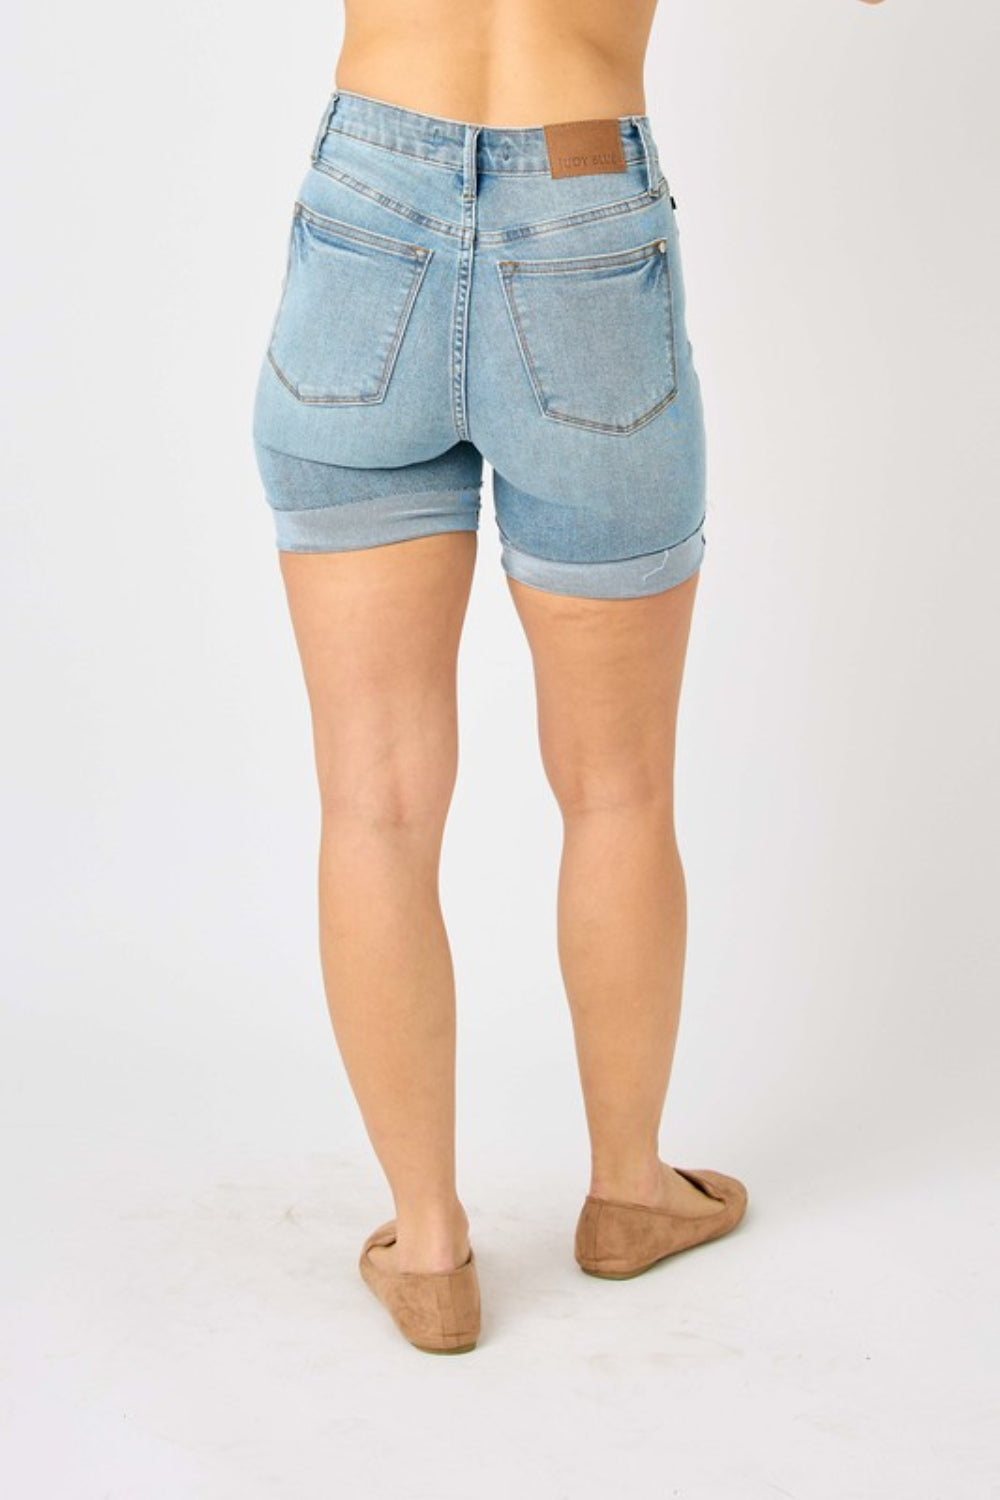 Judy Blue Full Size Tummy Control Denim Shorts - Denim Shorts - FITGGINS